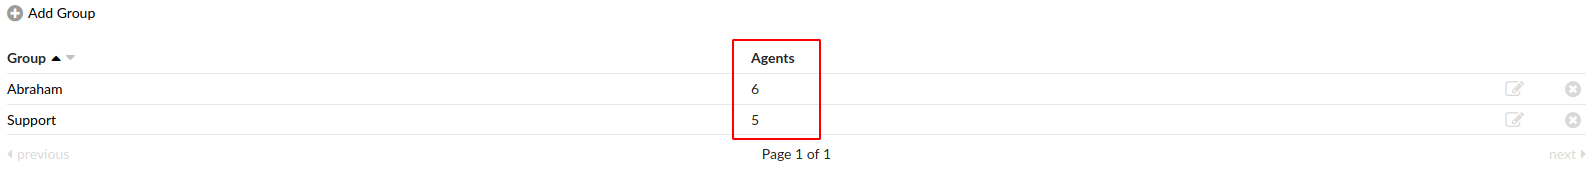 13-agents-6-agentgroupsnum.png